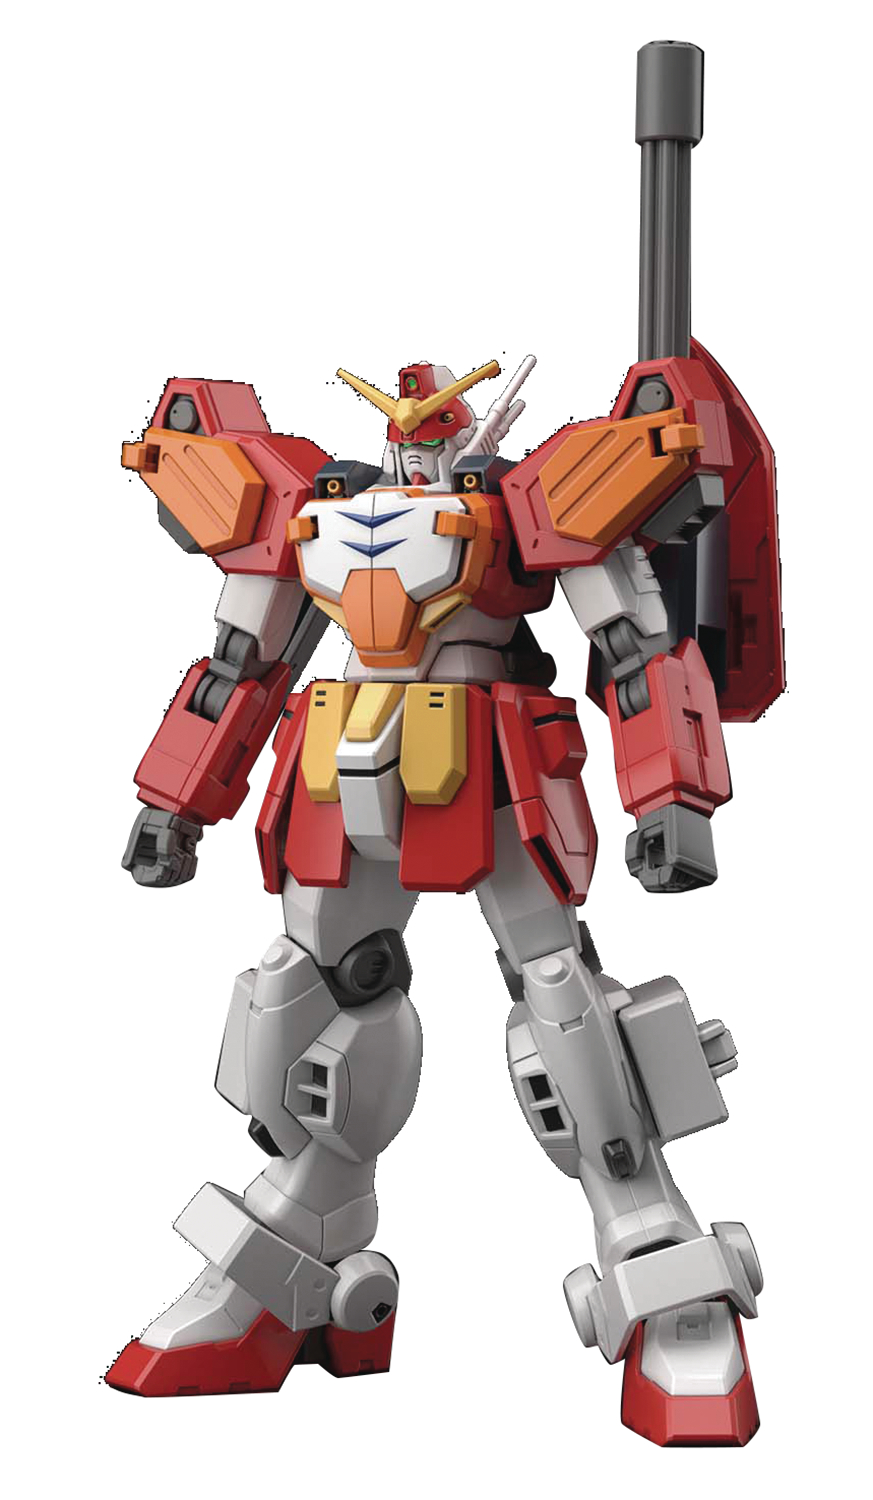 Gundam Wing #236 xxxg-01H Gundam Heavyarms Hgac 1/144 Model Kit